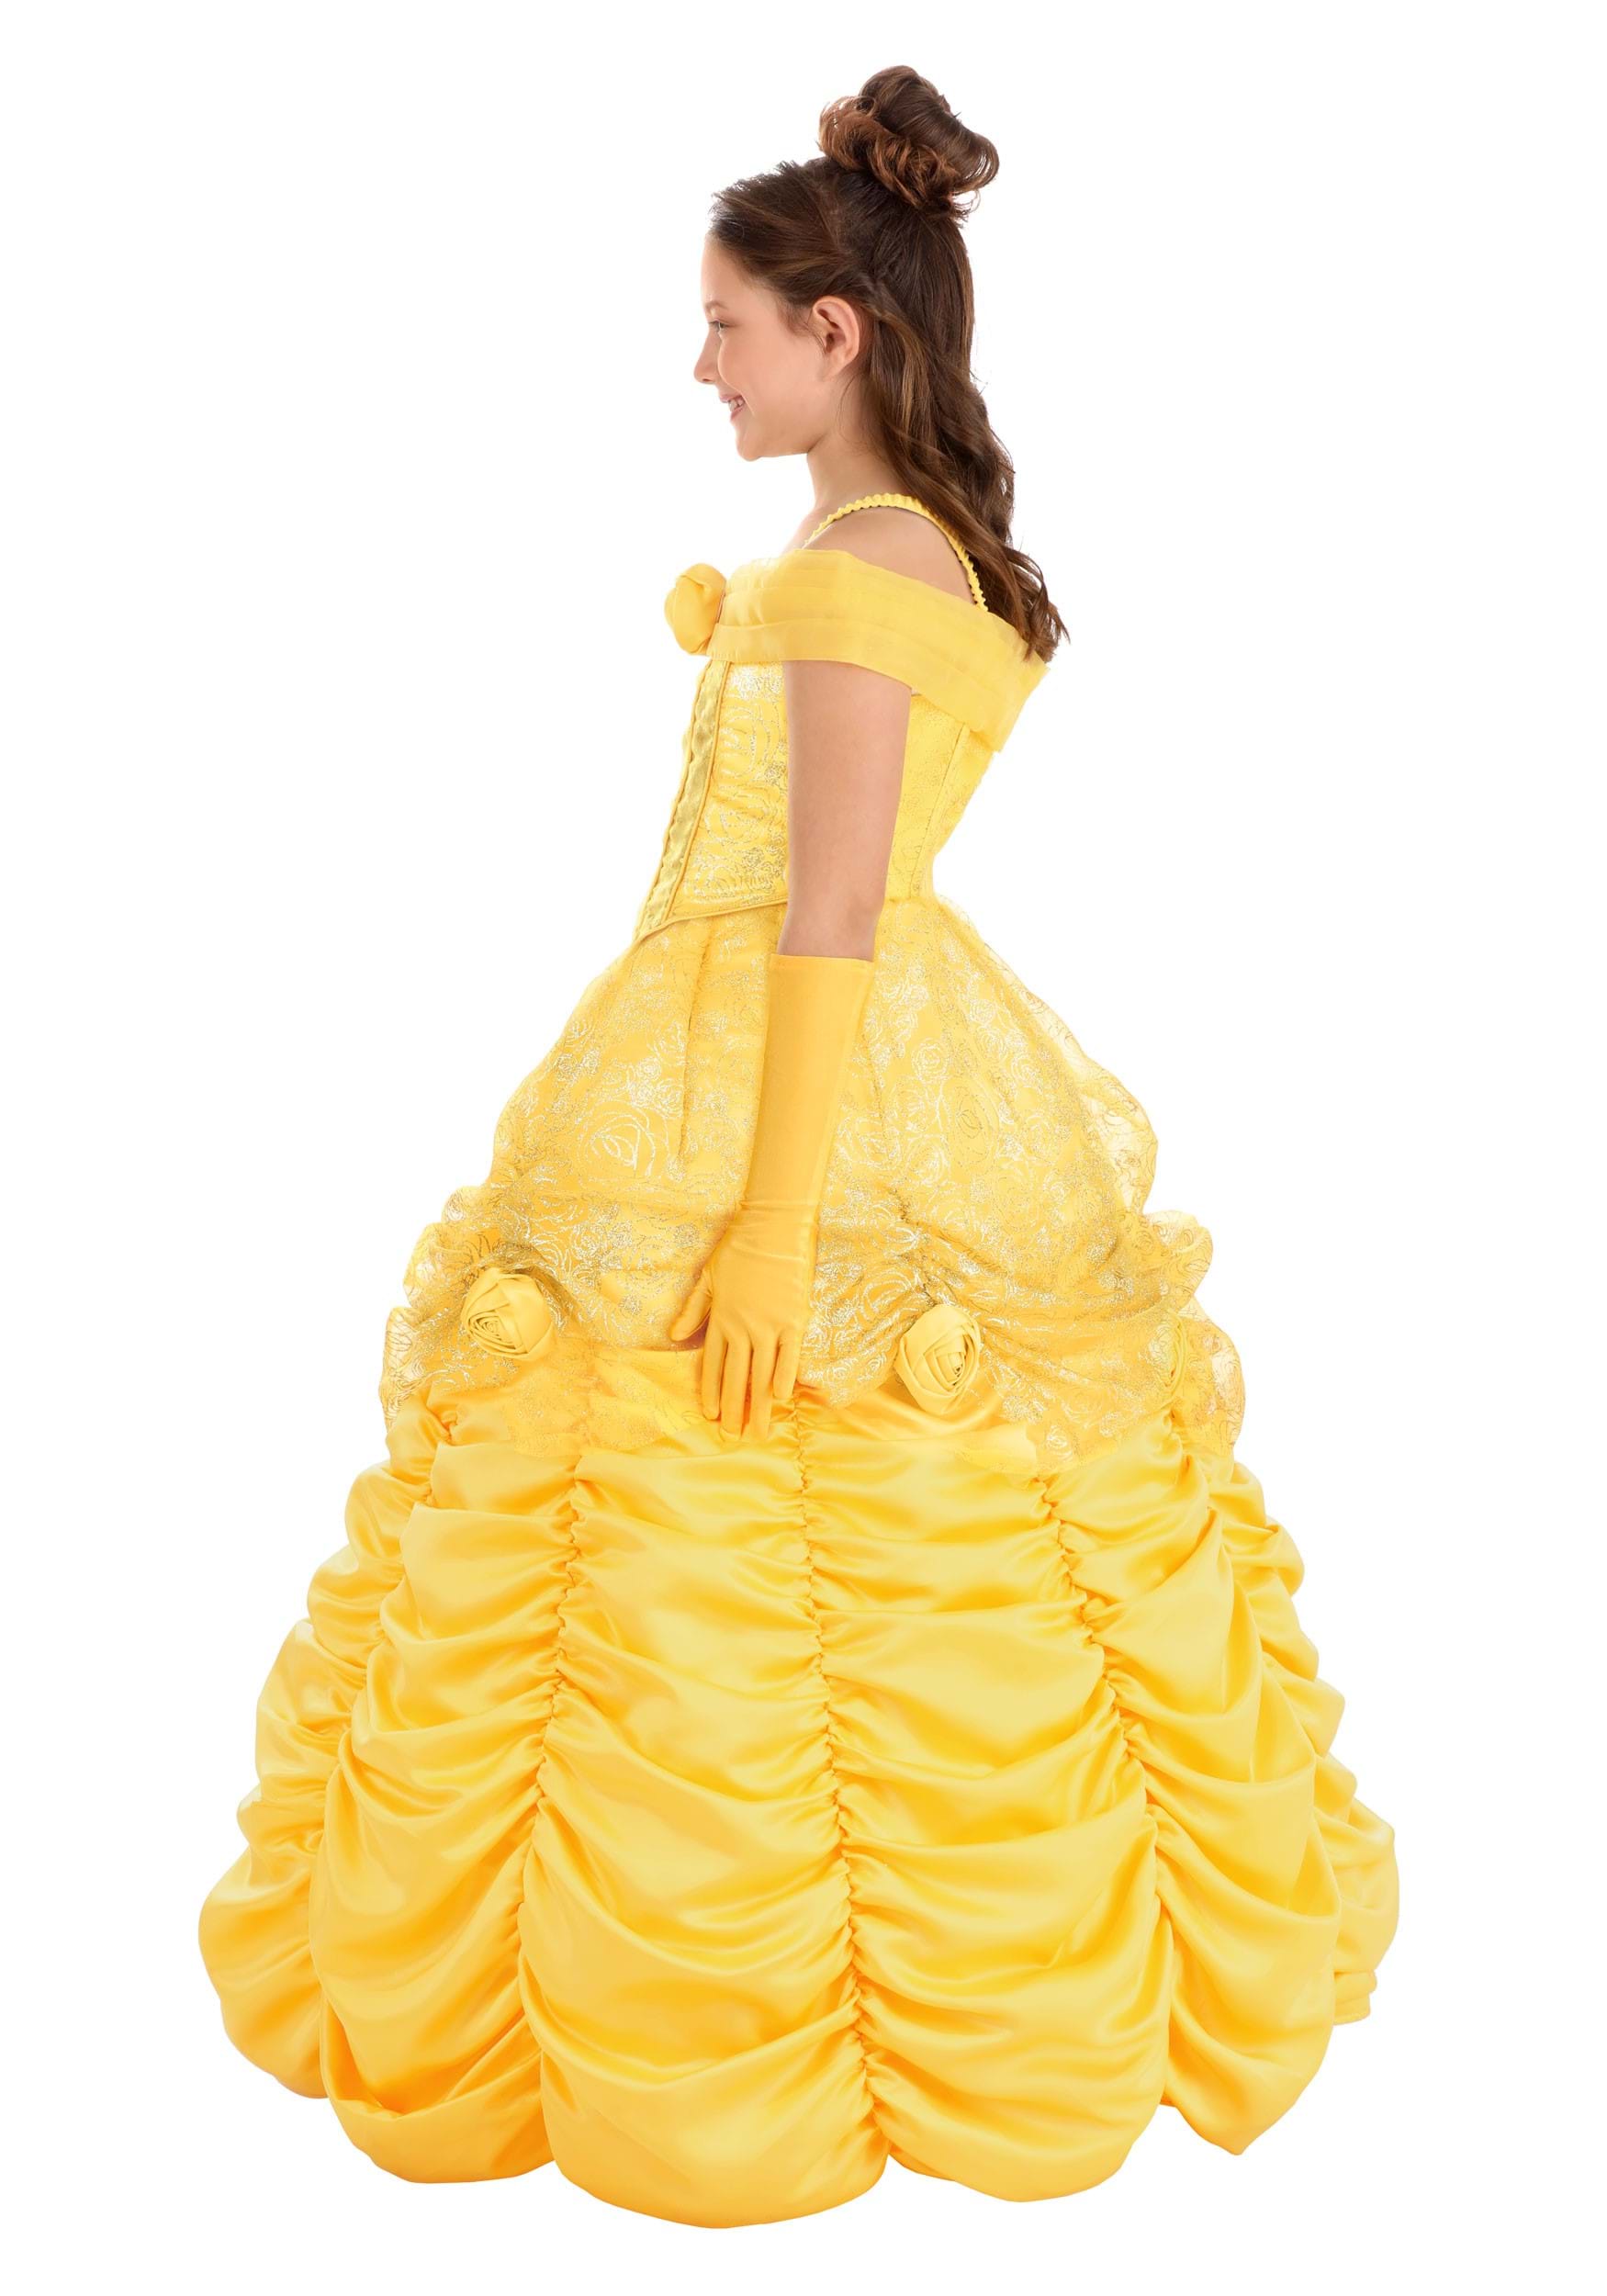 belle costume for girls